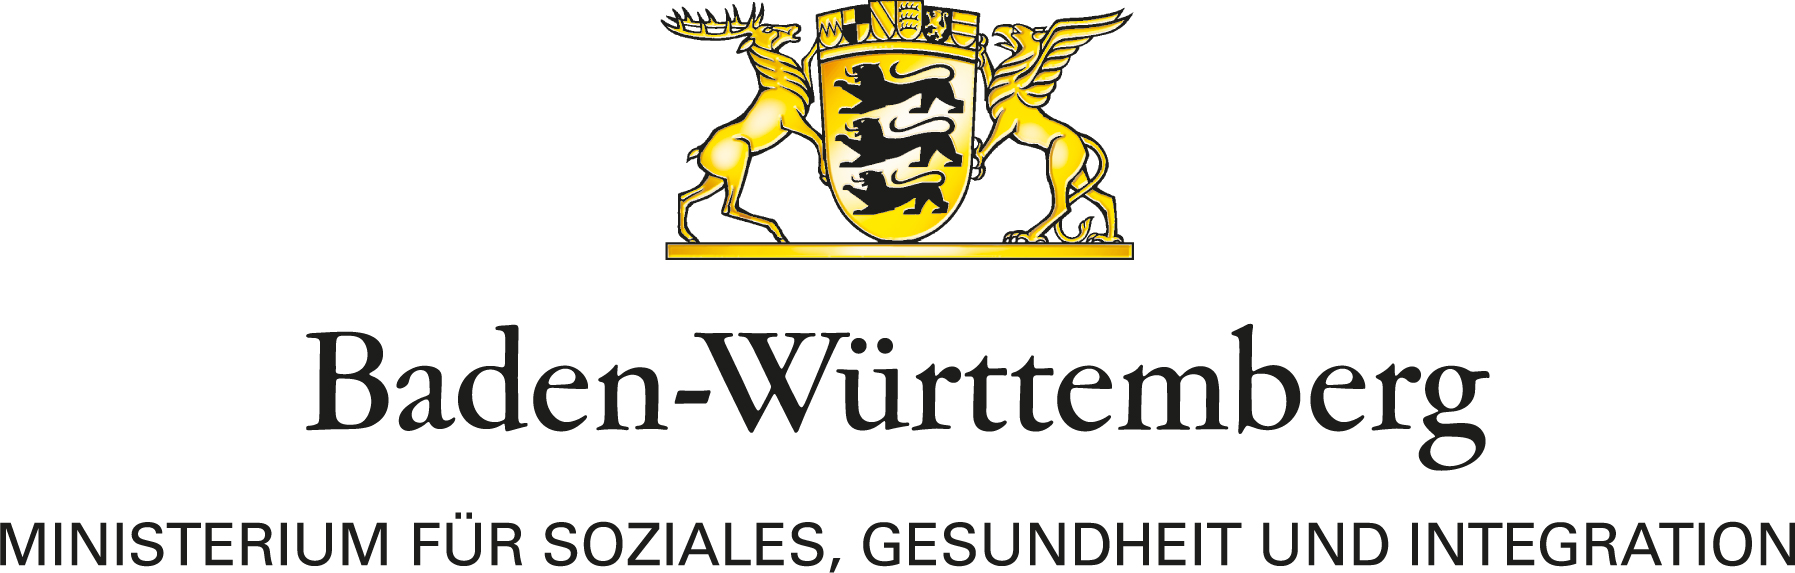 Link zum Ministerium für Soziales, Gesundheit und Integration Baden-Württemberg